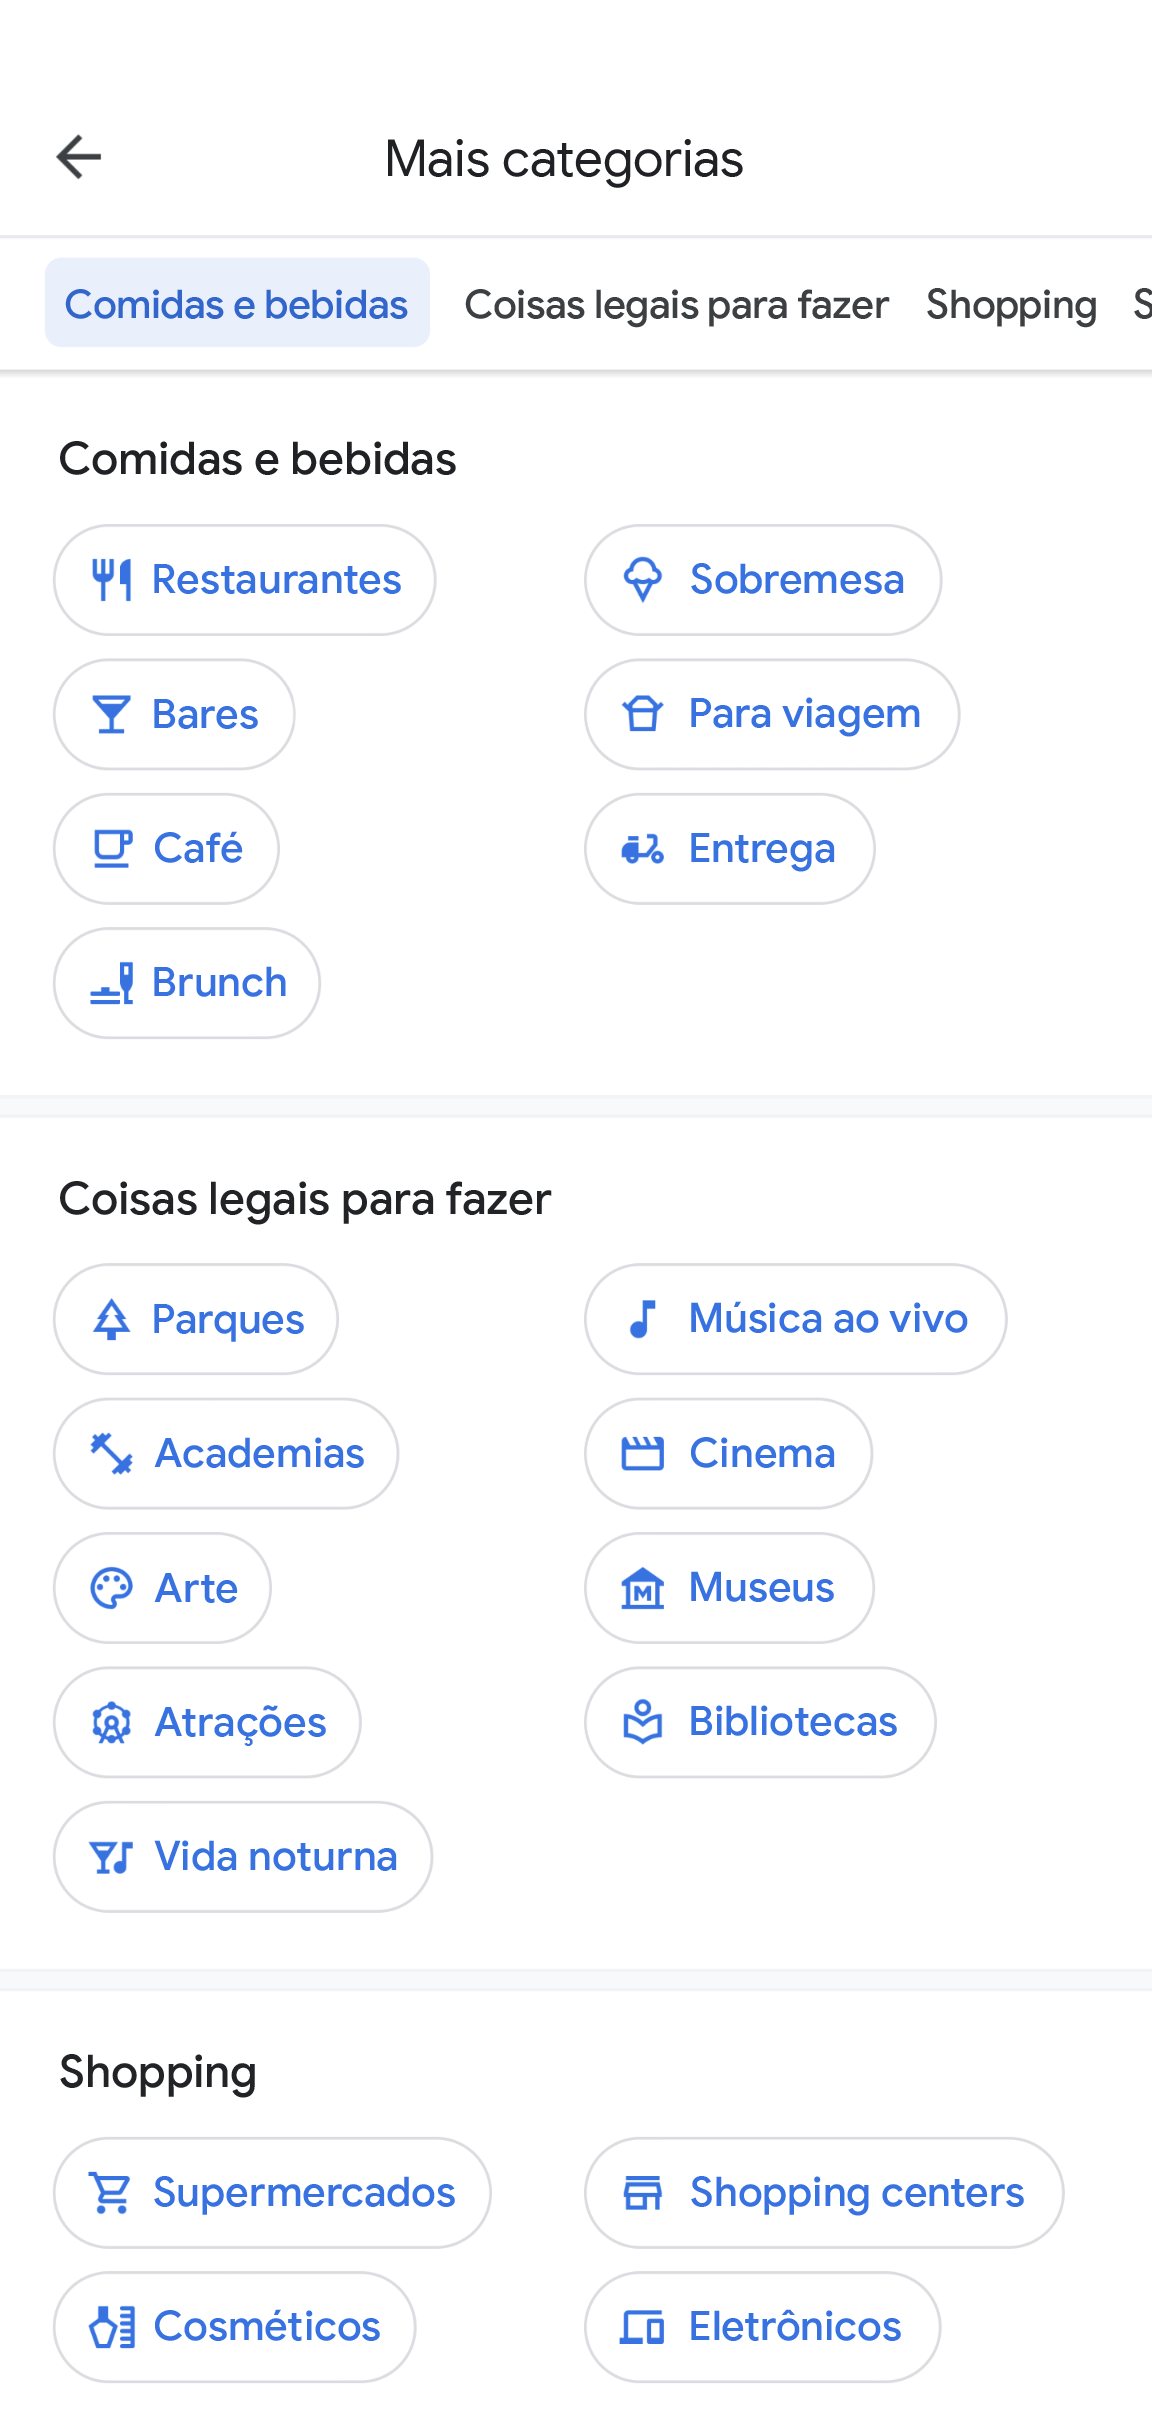 O app Google Maps tem uma página com título o "Mais categorias". Nela, você encontra opções como "Comidas e bebidas", "Coisas legais para fazer" e "Compras", além das subcategorias. 